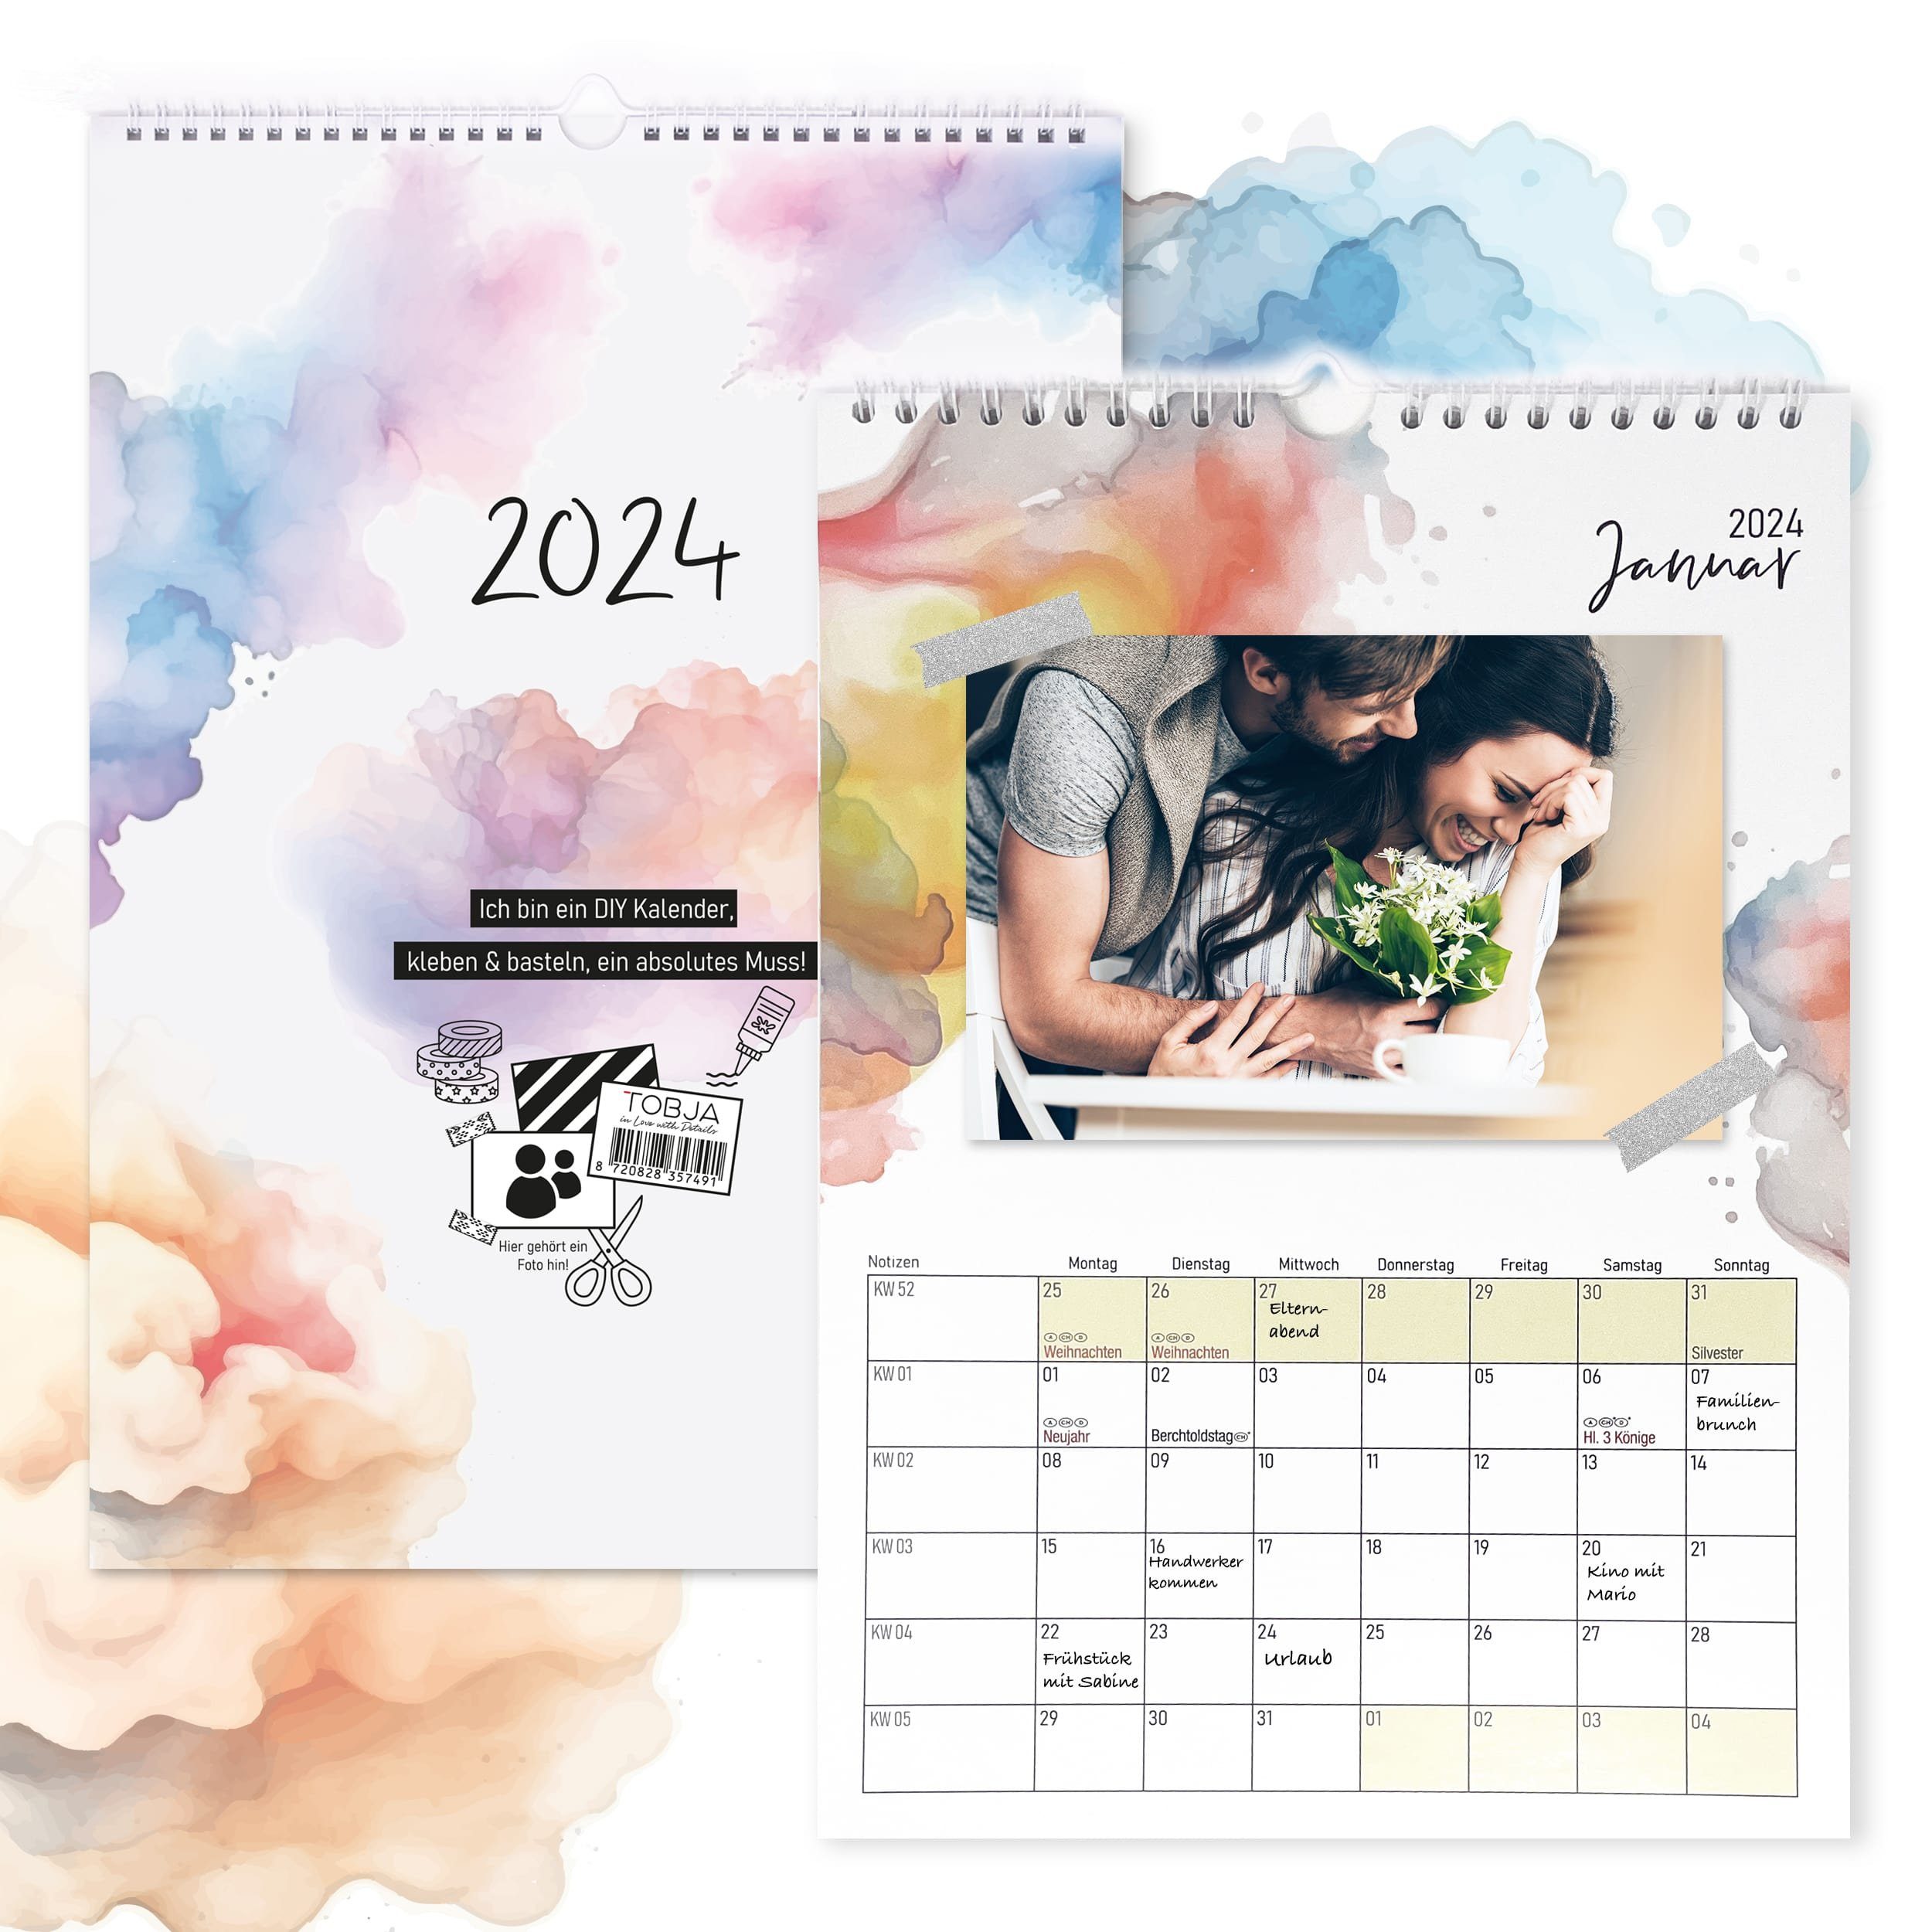 https://i.otto.de/i/otto/4b0fad44-6a49-5357-a492-1e263dc49771/tobja-wandkalender-fotokalender-2024-bastelkalender-selbst-gestalten-kalender-2024-selber-machen.jpg?$formatz$